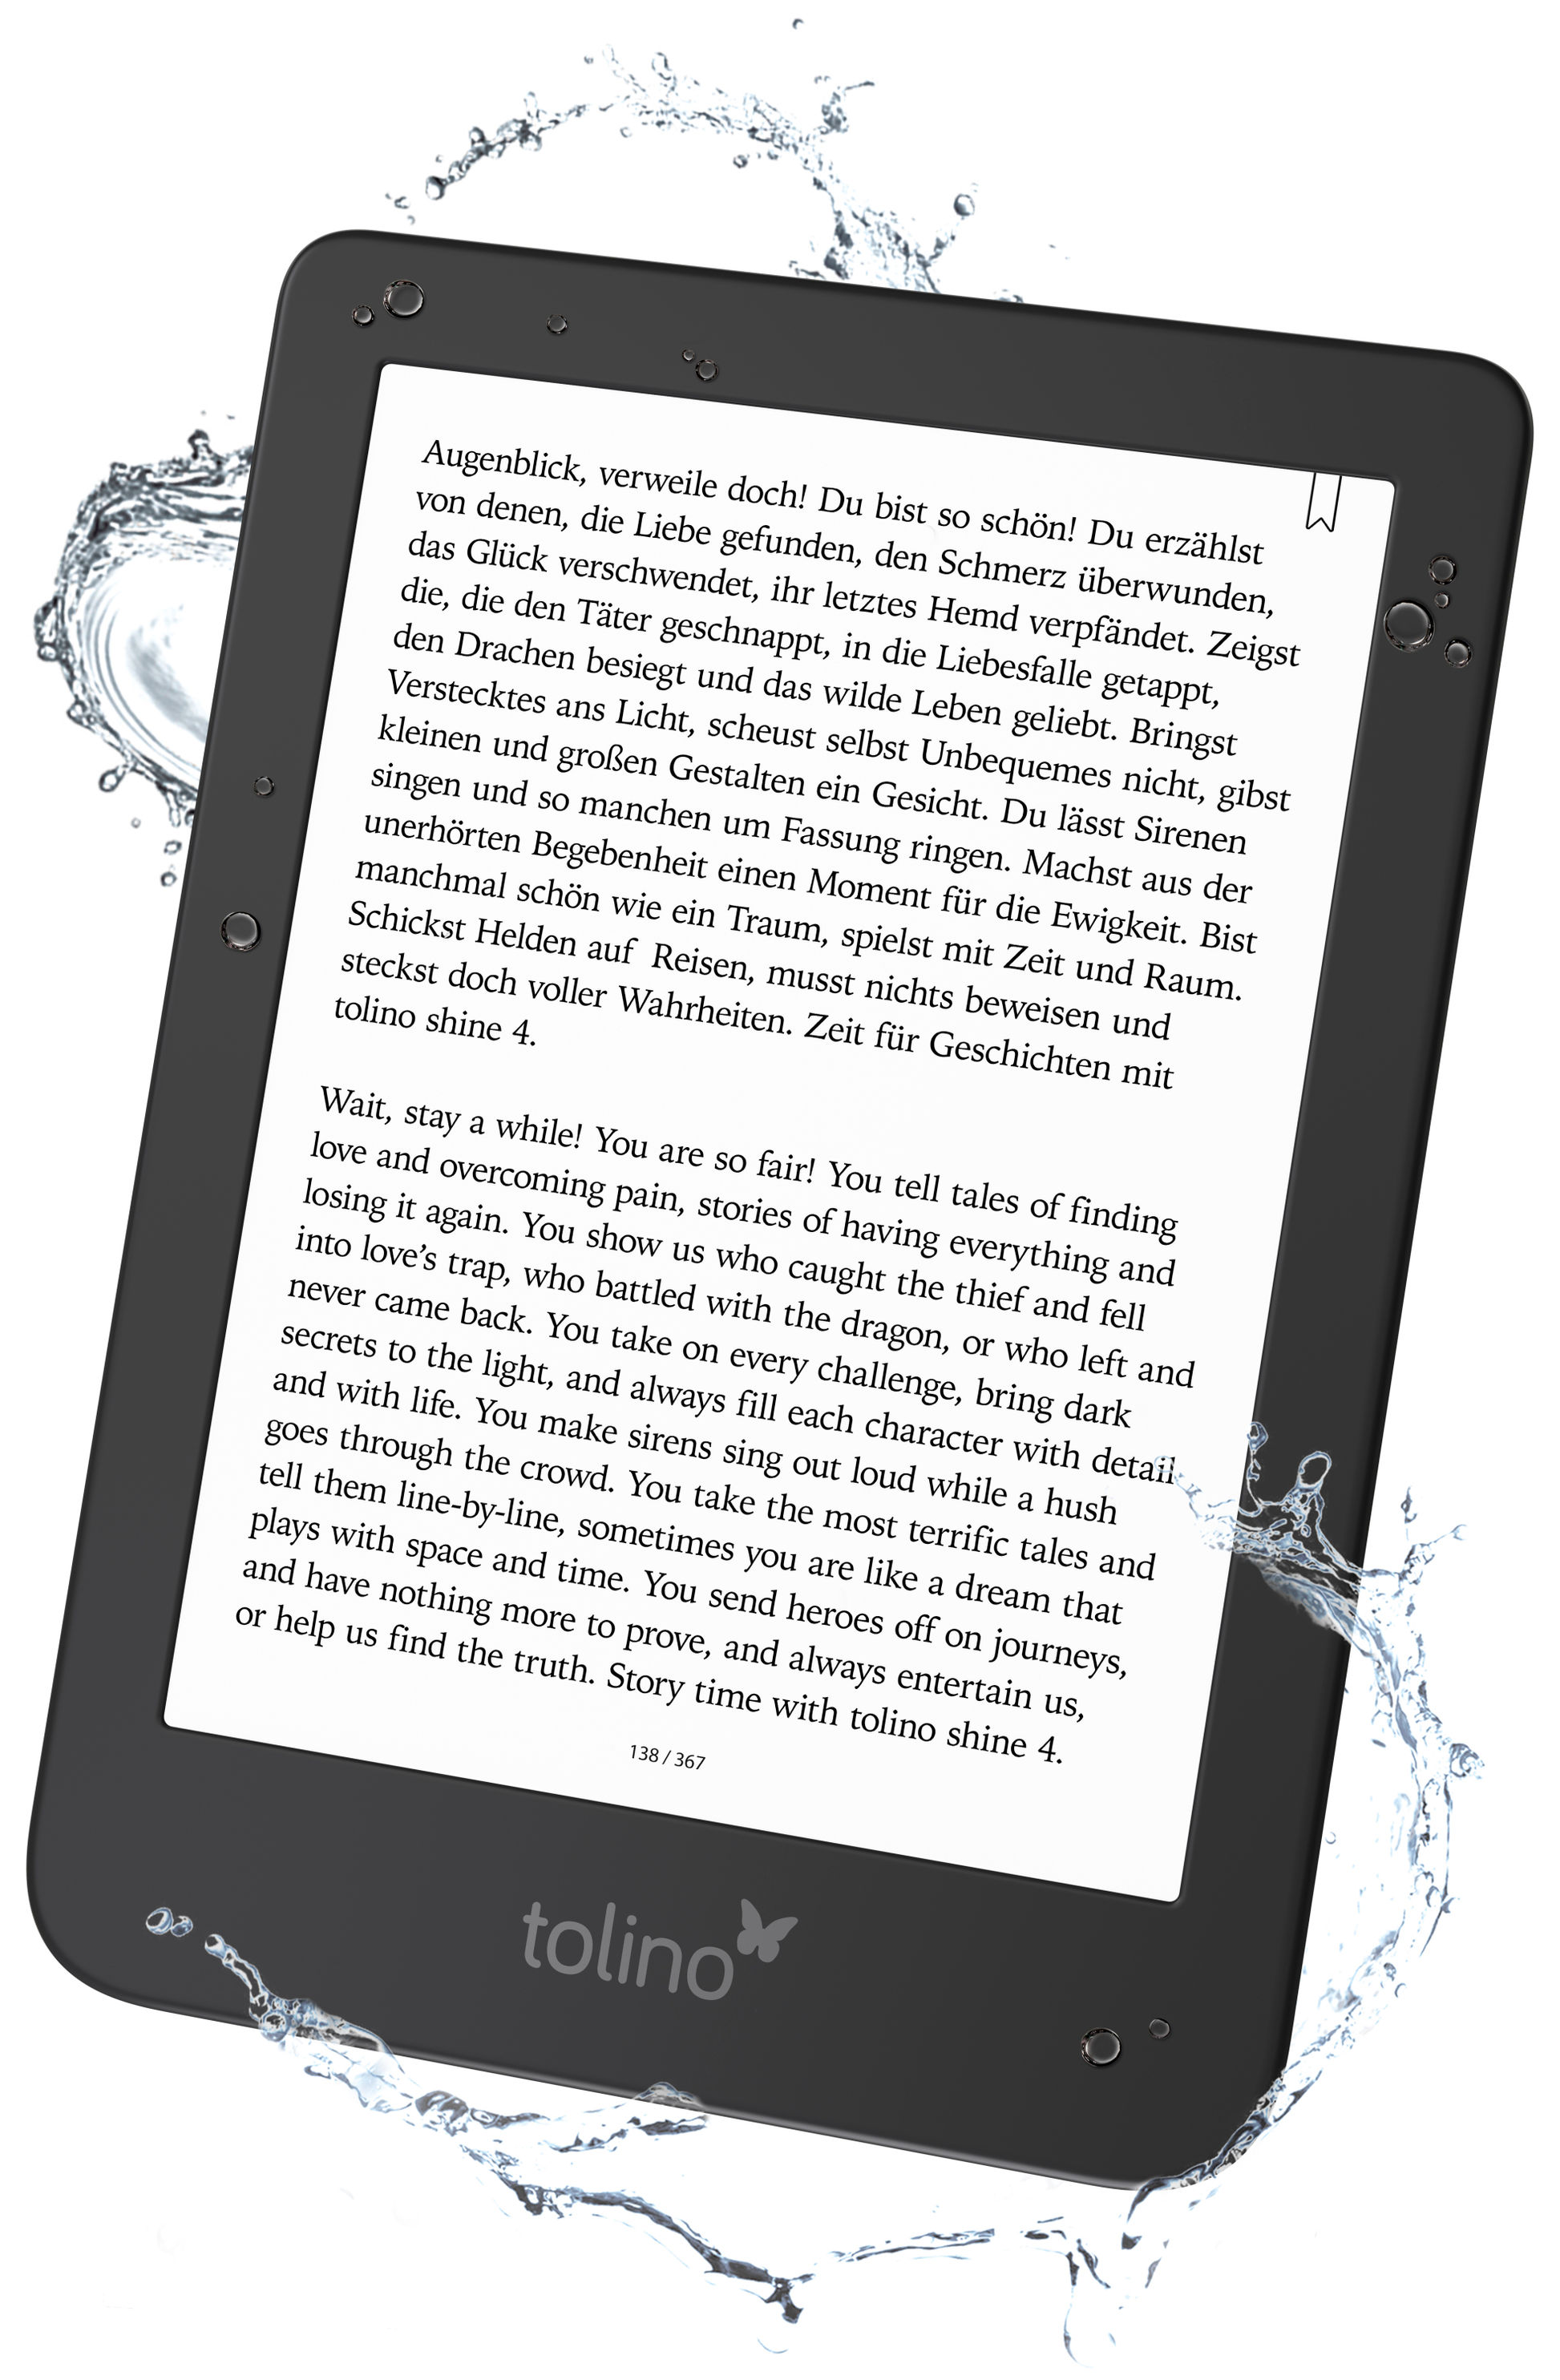 tolino shine 4 eBook-Reader jetzt bei Weltbild.de bestellen